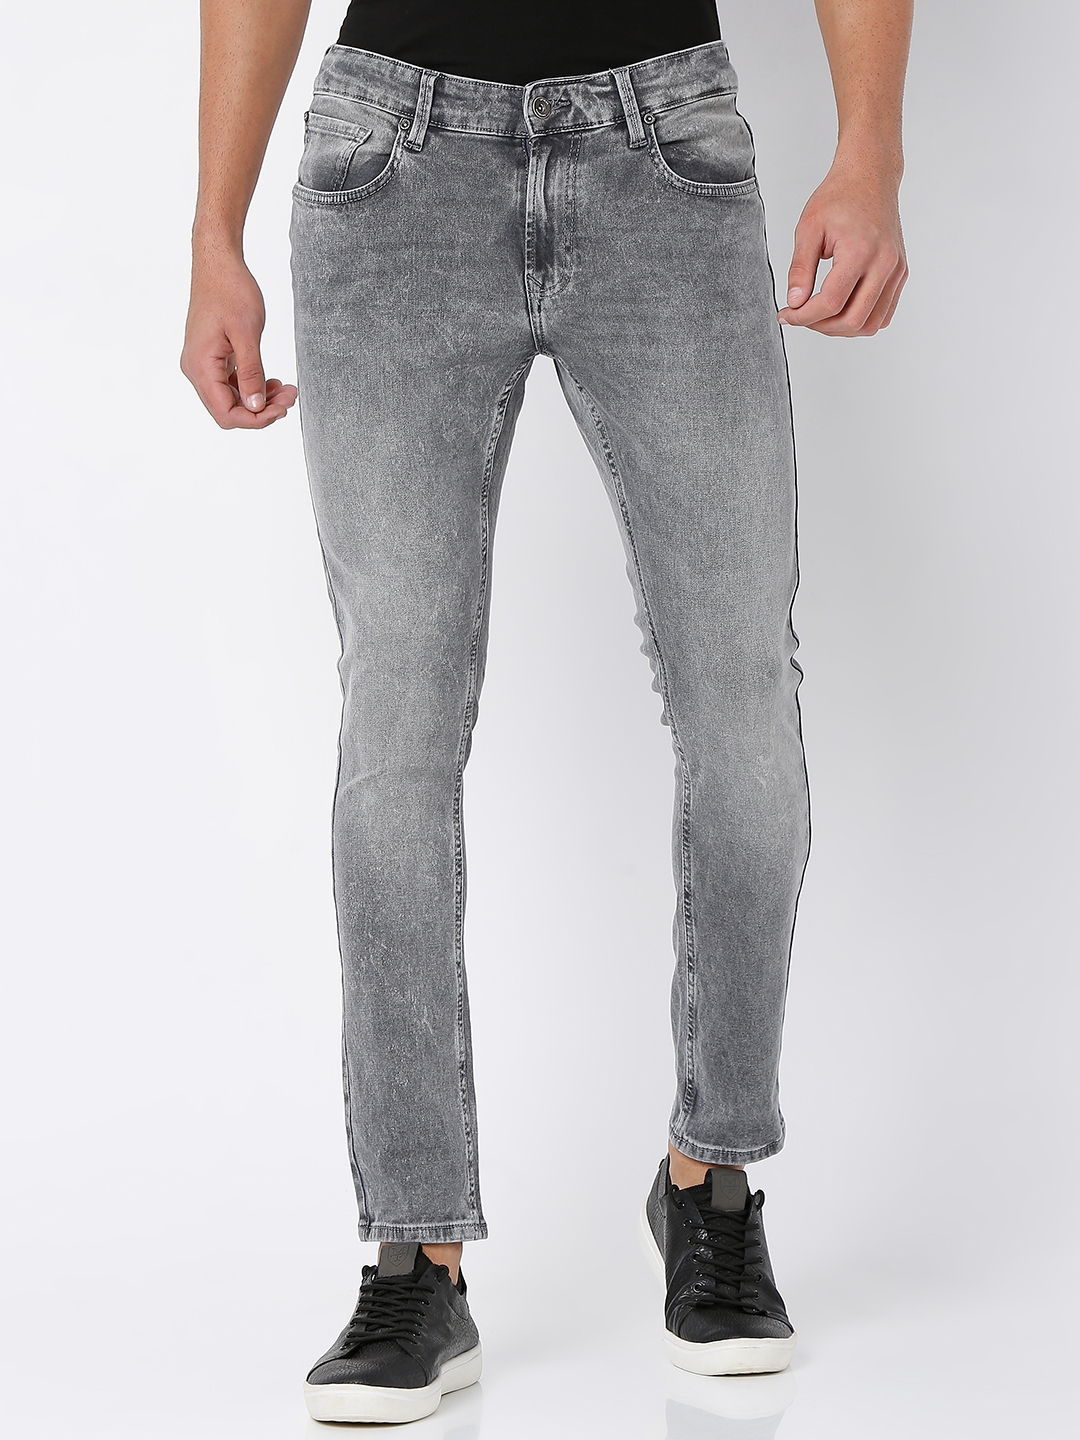 Men's Grey Cotton Solid Jeans